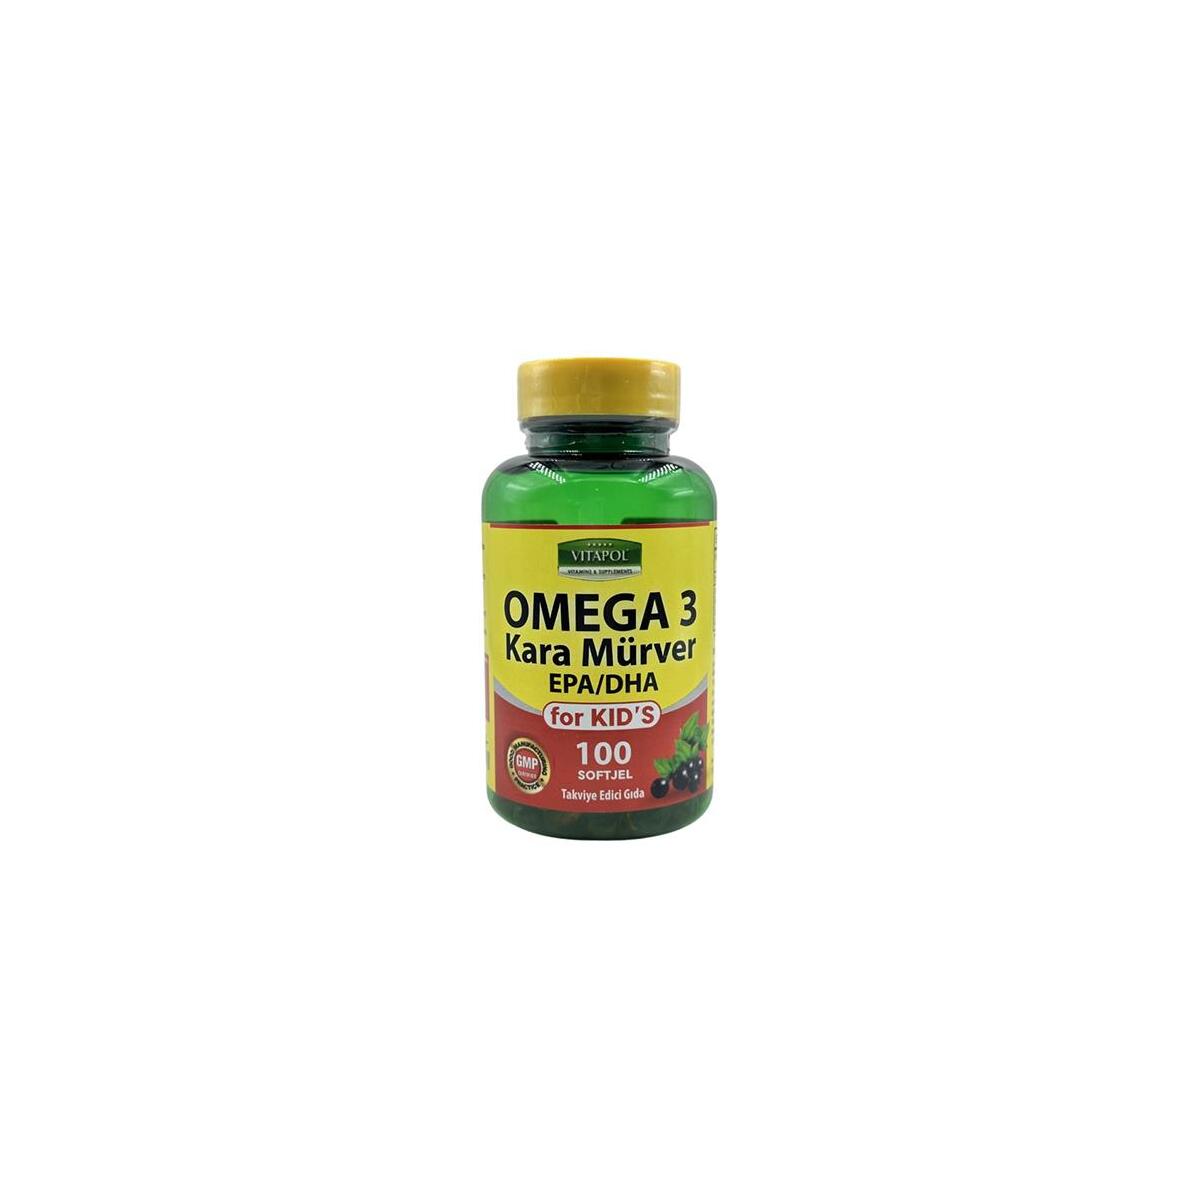 Vitapol Omega 3 Çoçuk Balık Yağı Kara Mürver 100 Softgel For Kid's Çoçuklar İçin